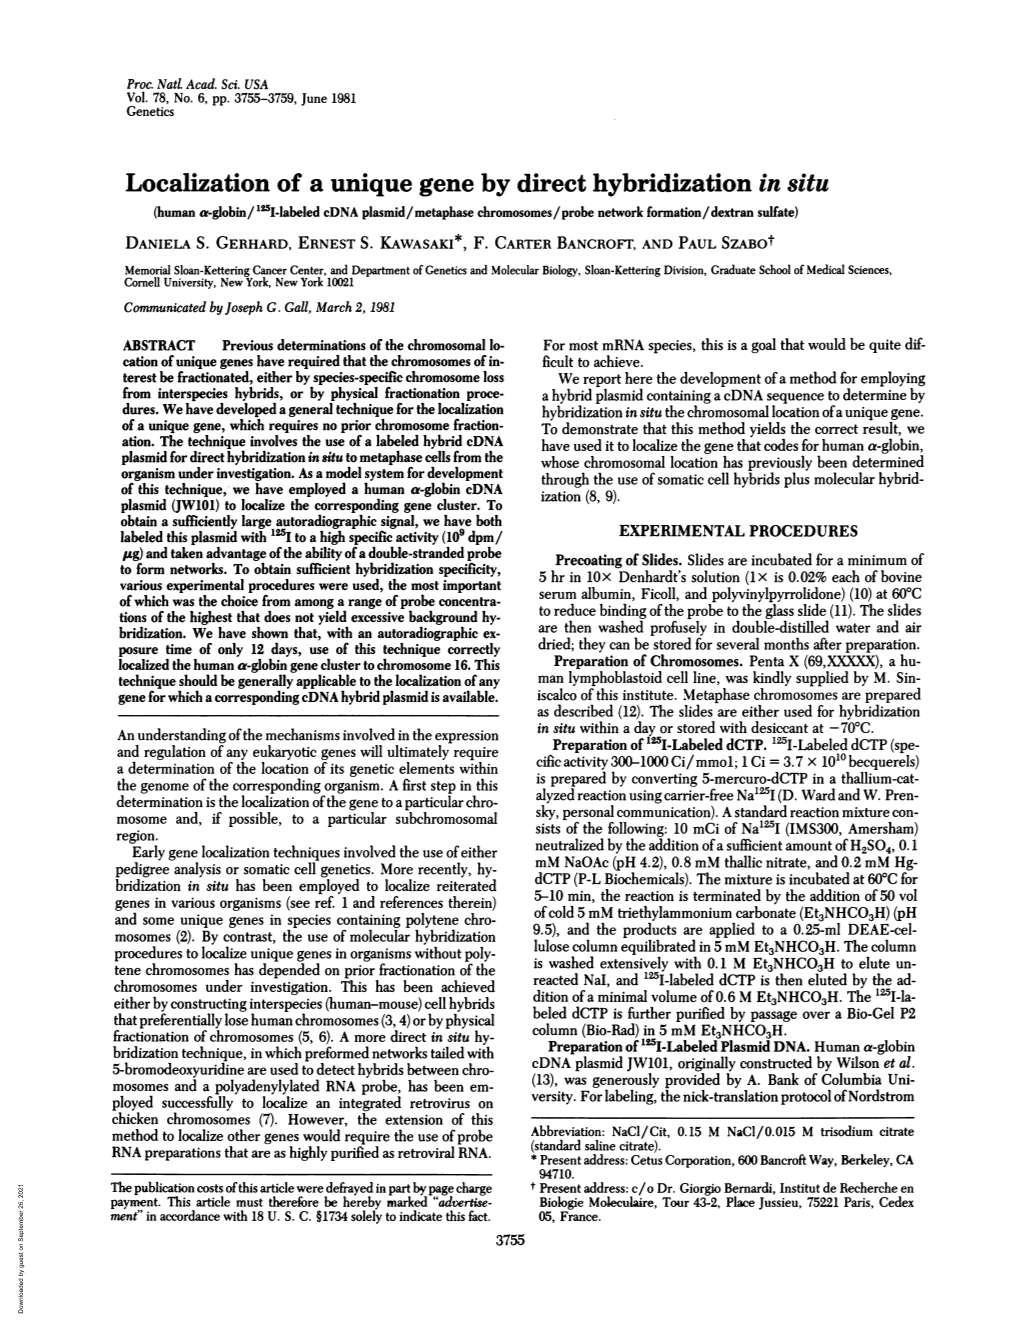 Localization of a Unique Gene by Direct Hybridization in Situ